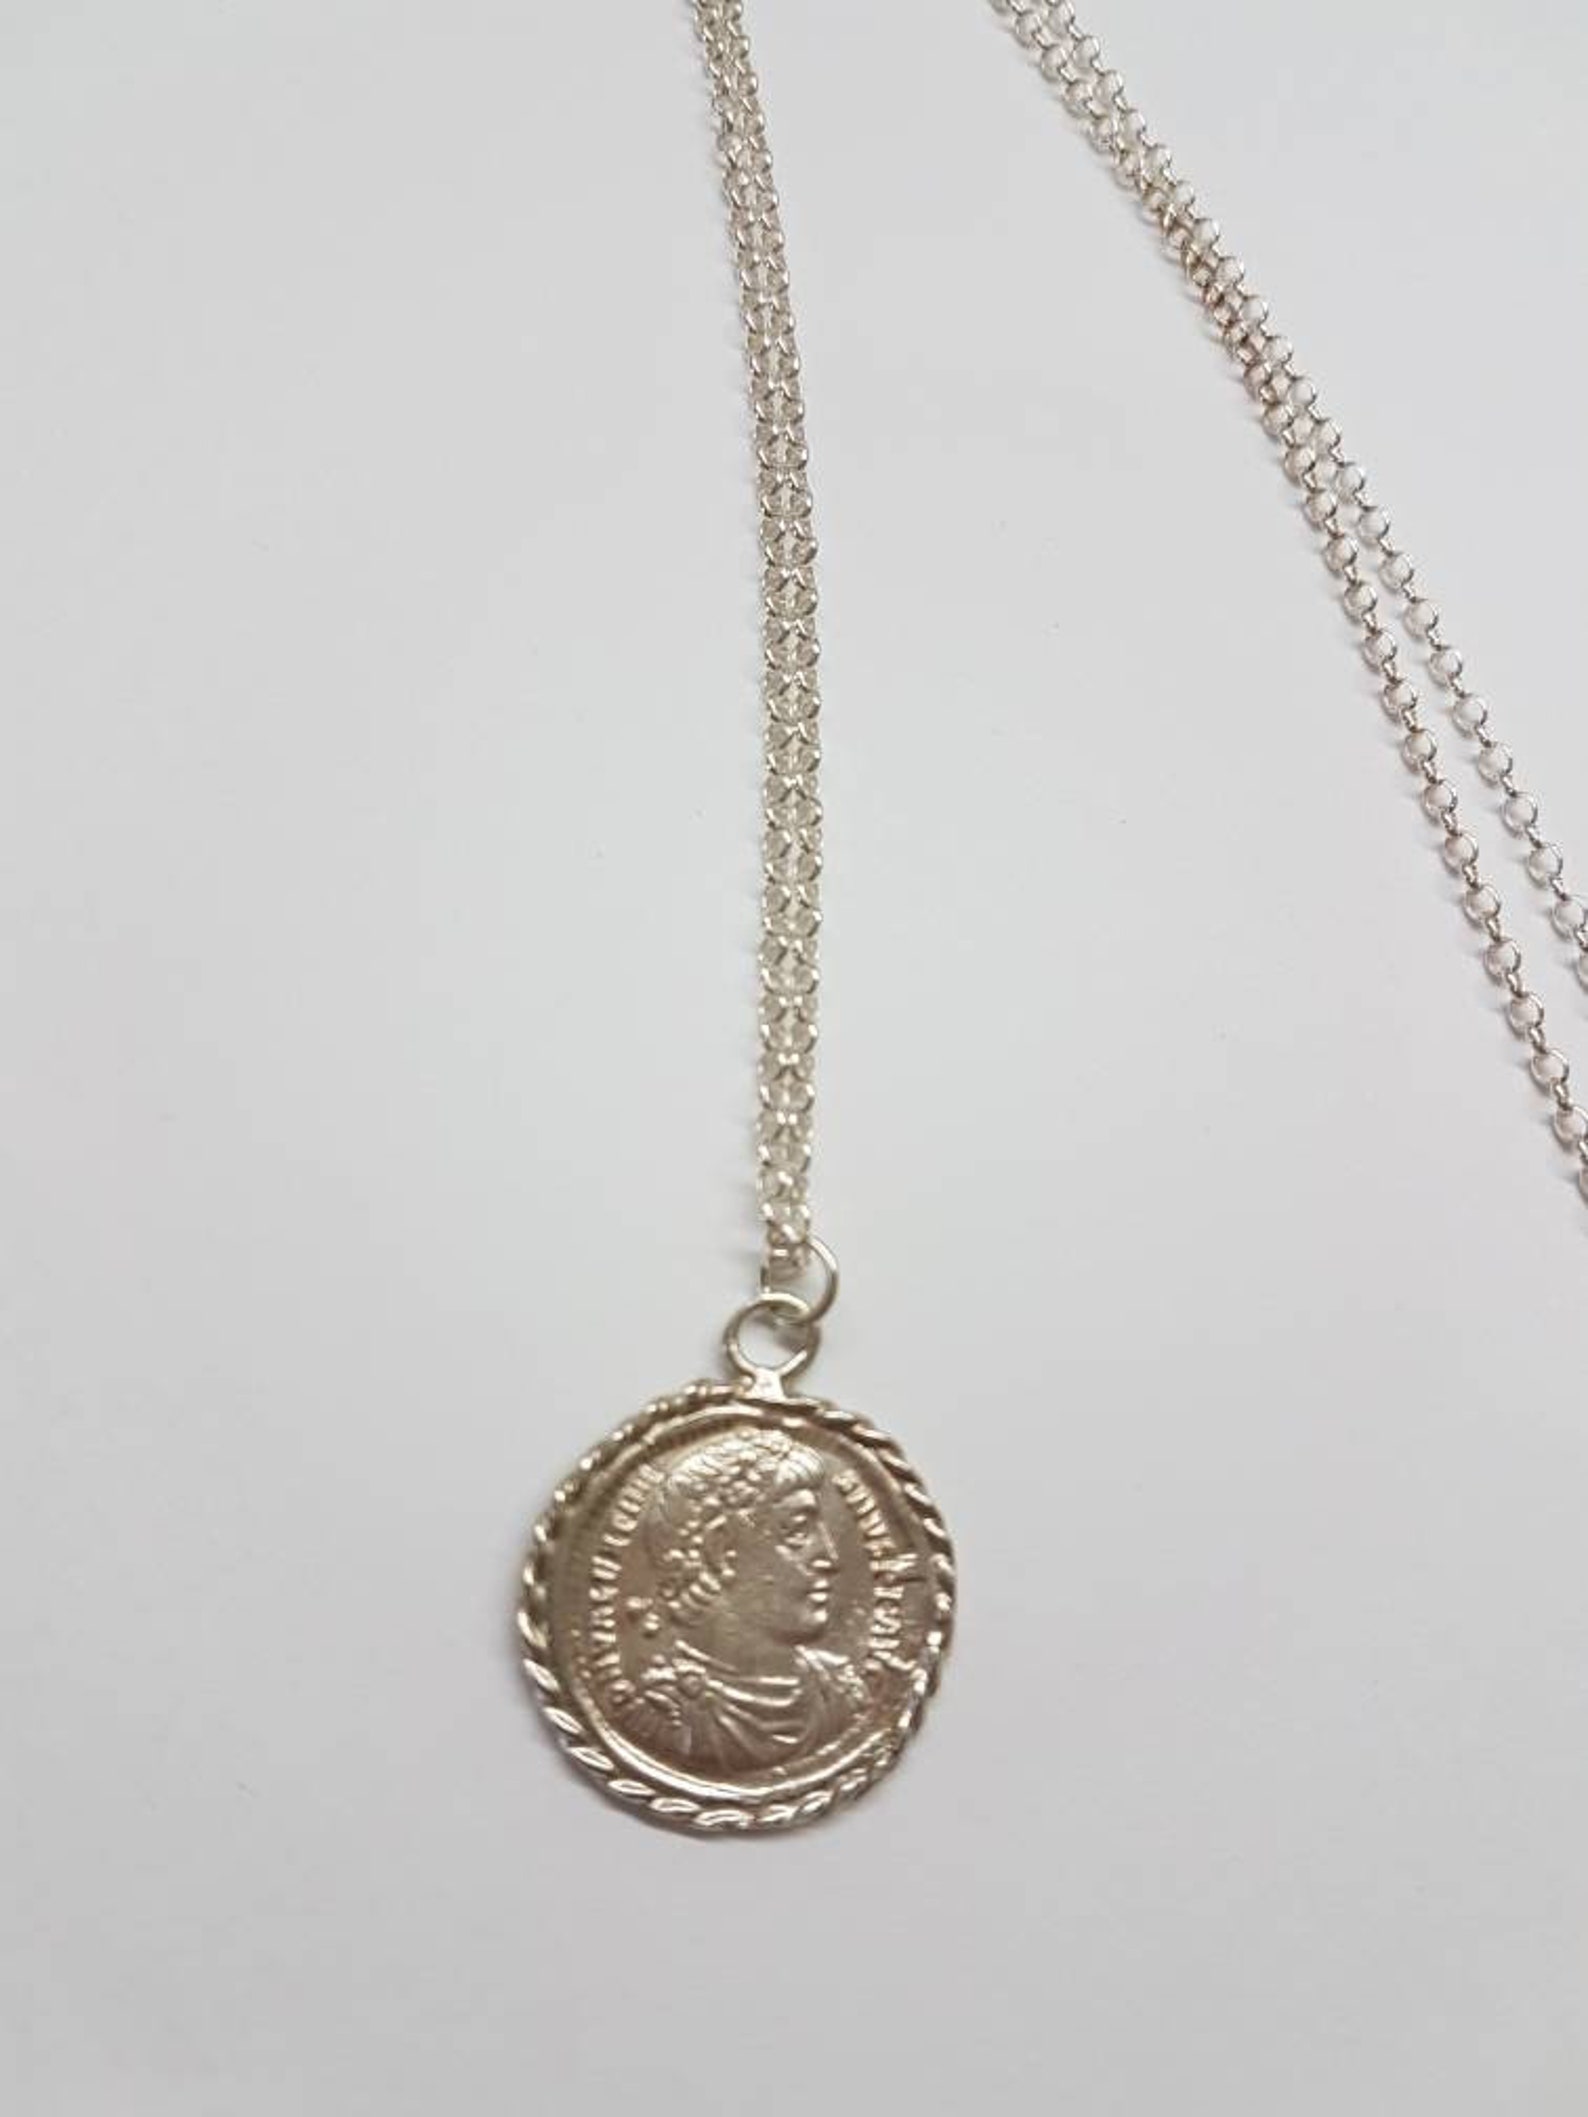 Coin pendant necklace long coin necklace silver coin | Etsy